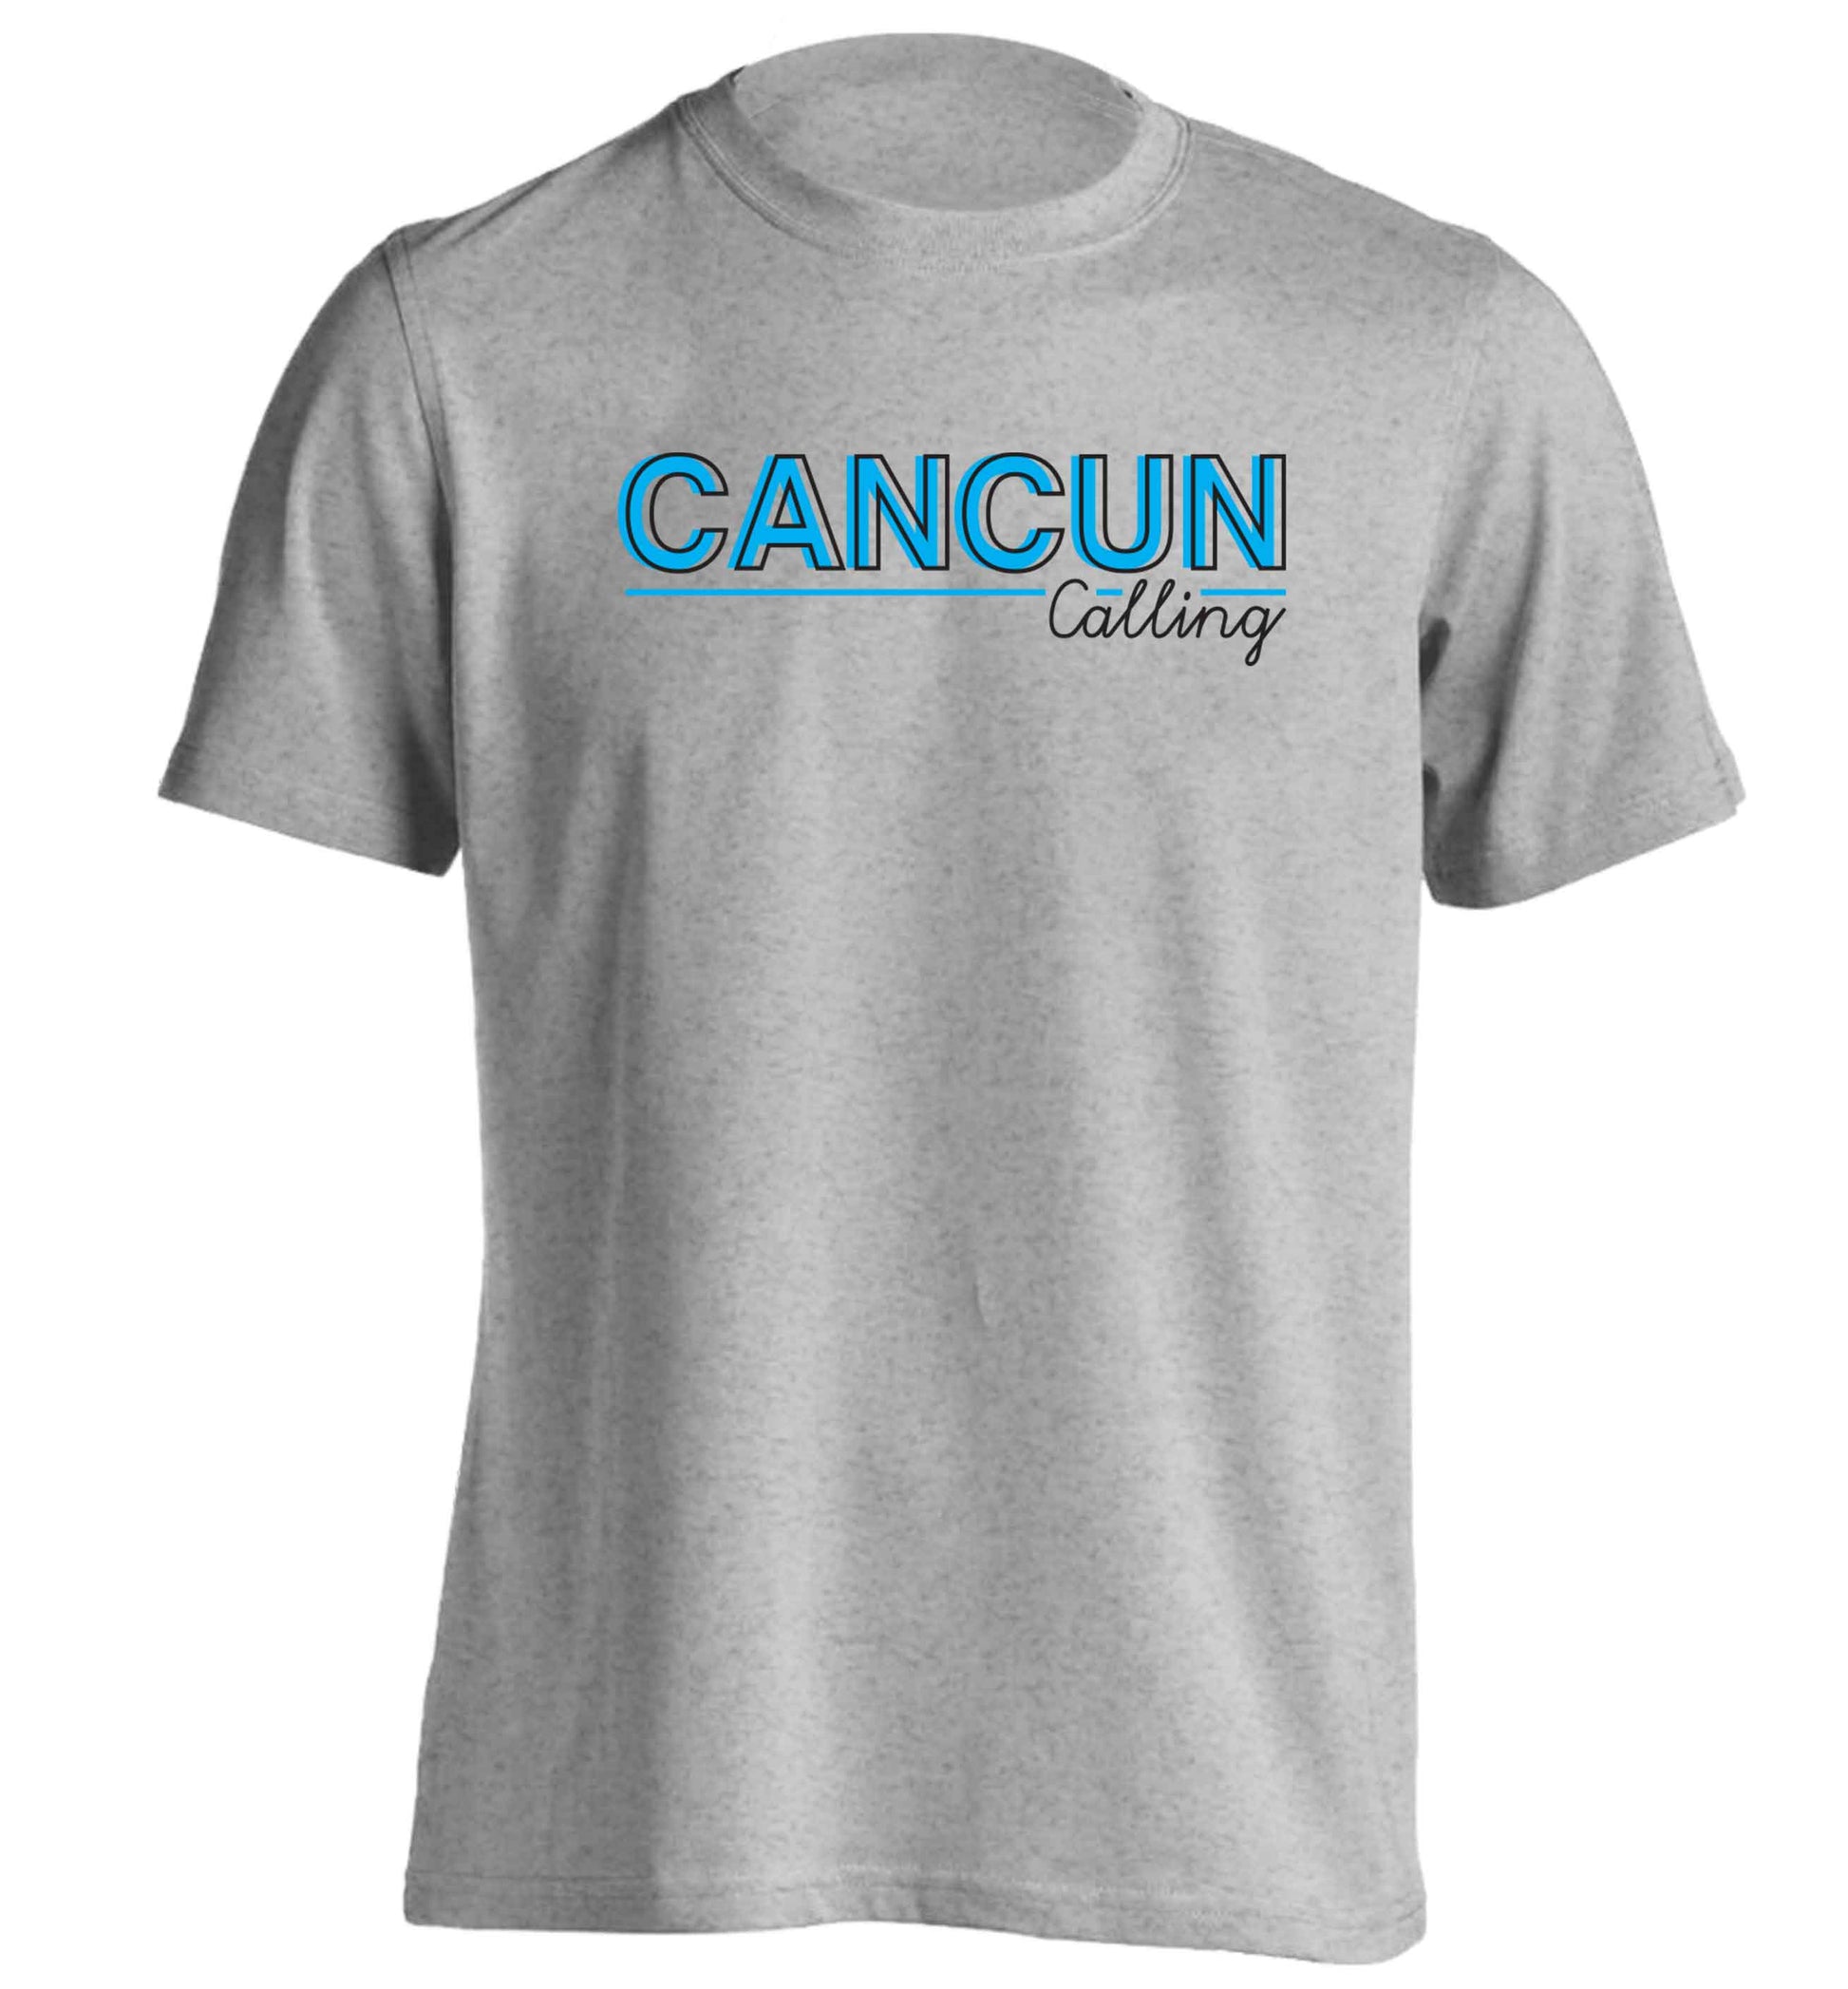 Cancun calling adults unisex grey Tshirt 2XL